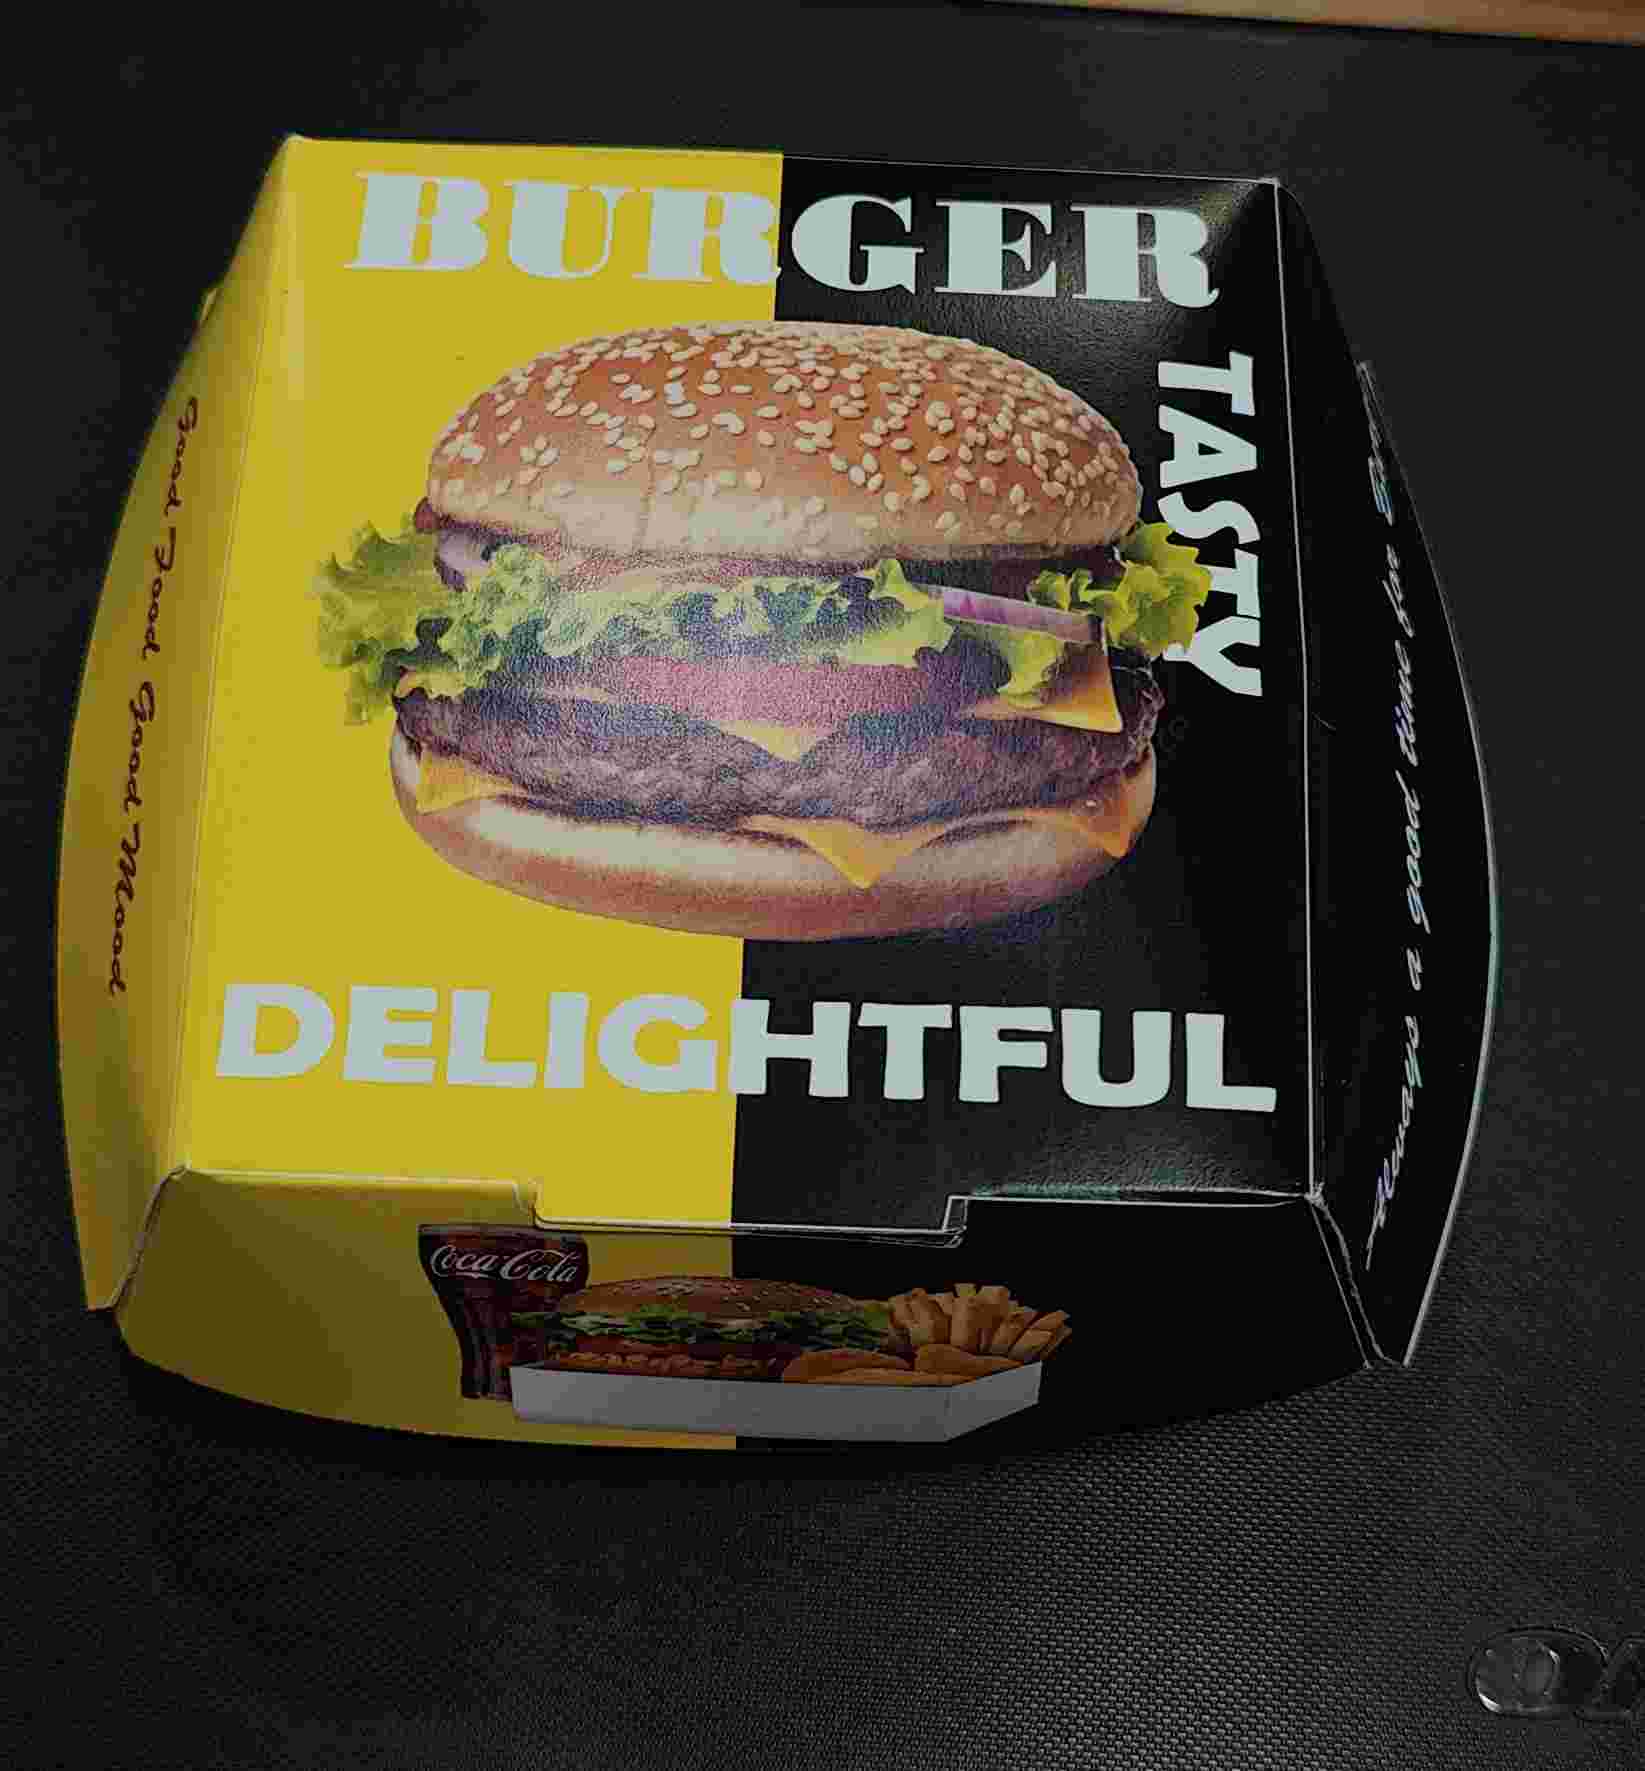 Burger box clamshell printed 